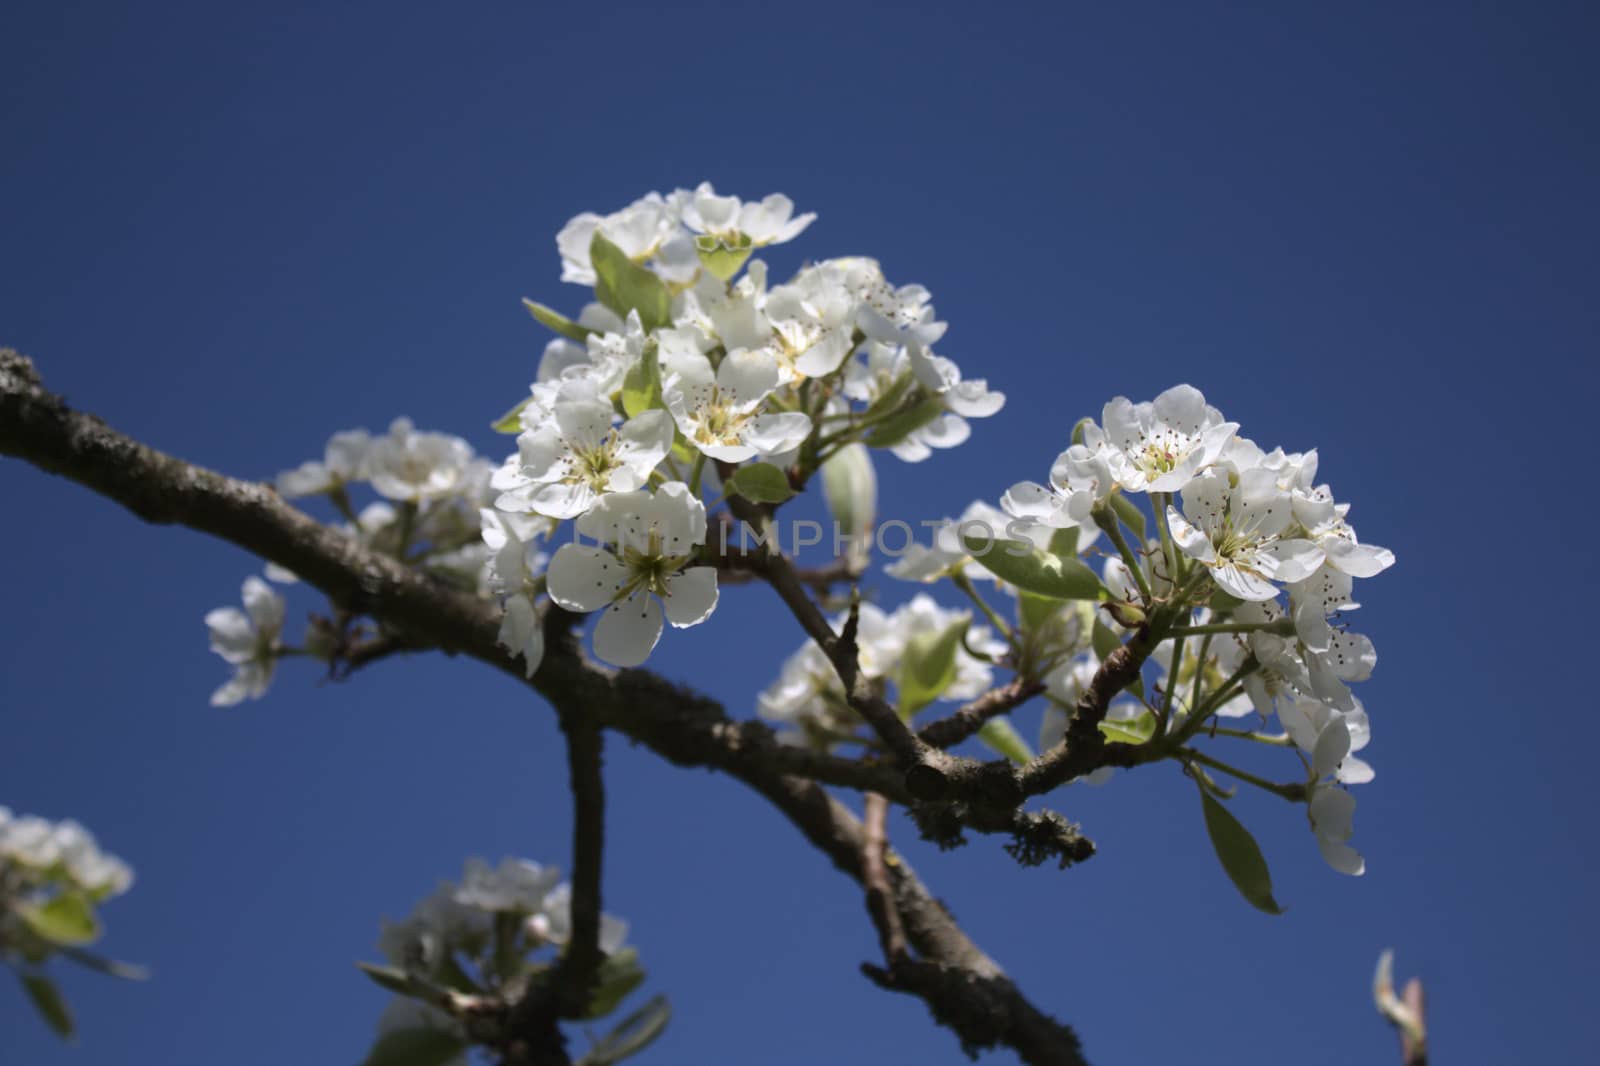 wonderful apple tree blossoms in the garden by martina_unbehauen